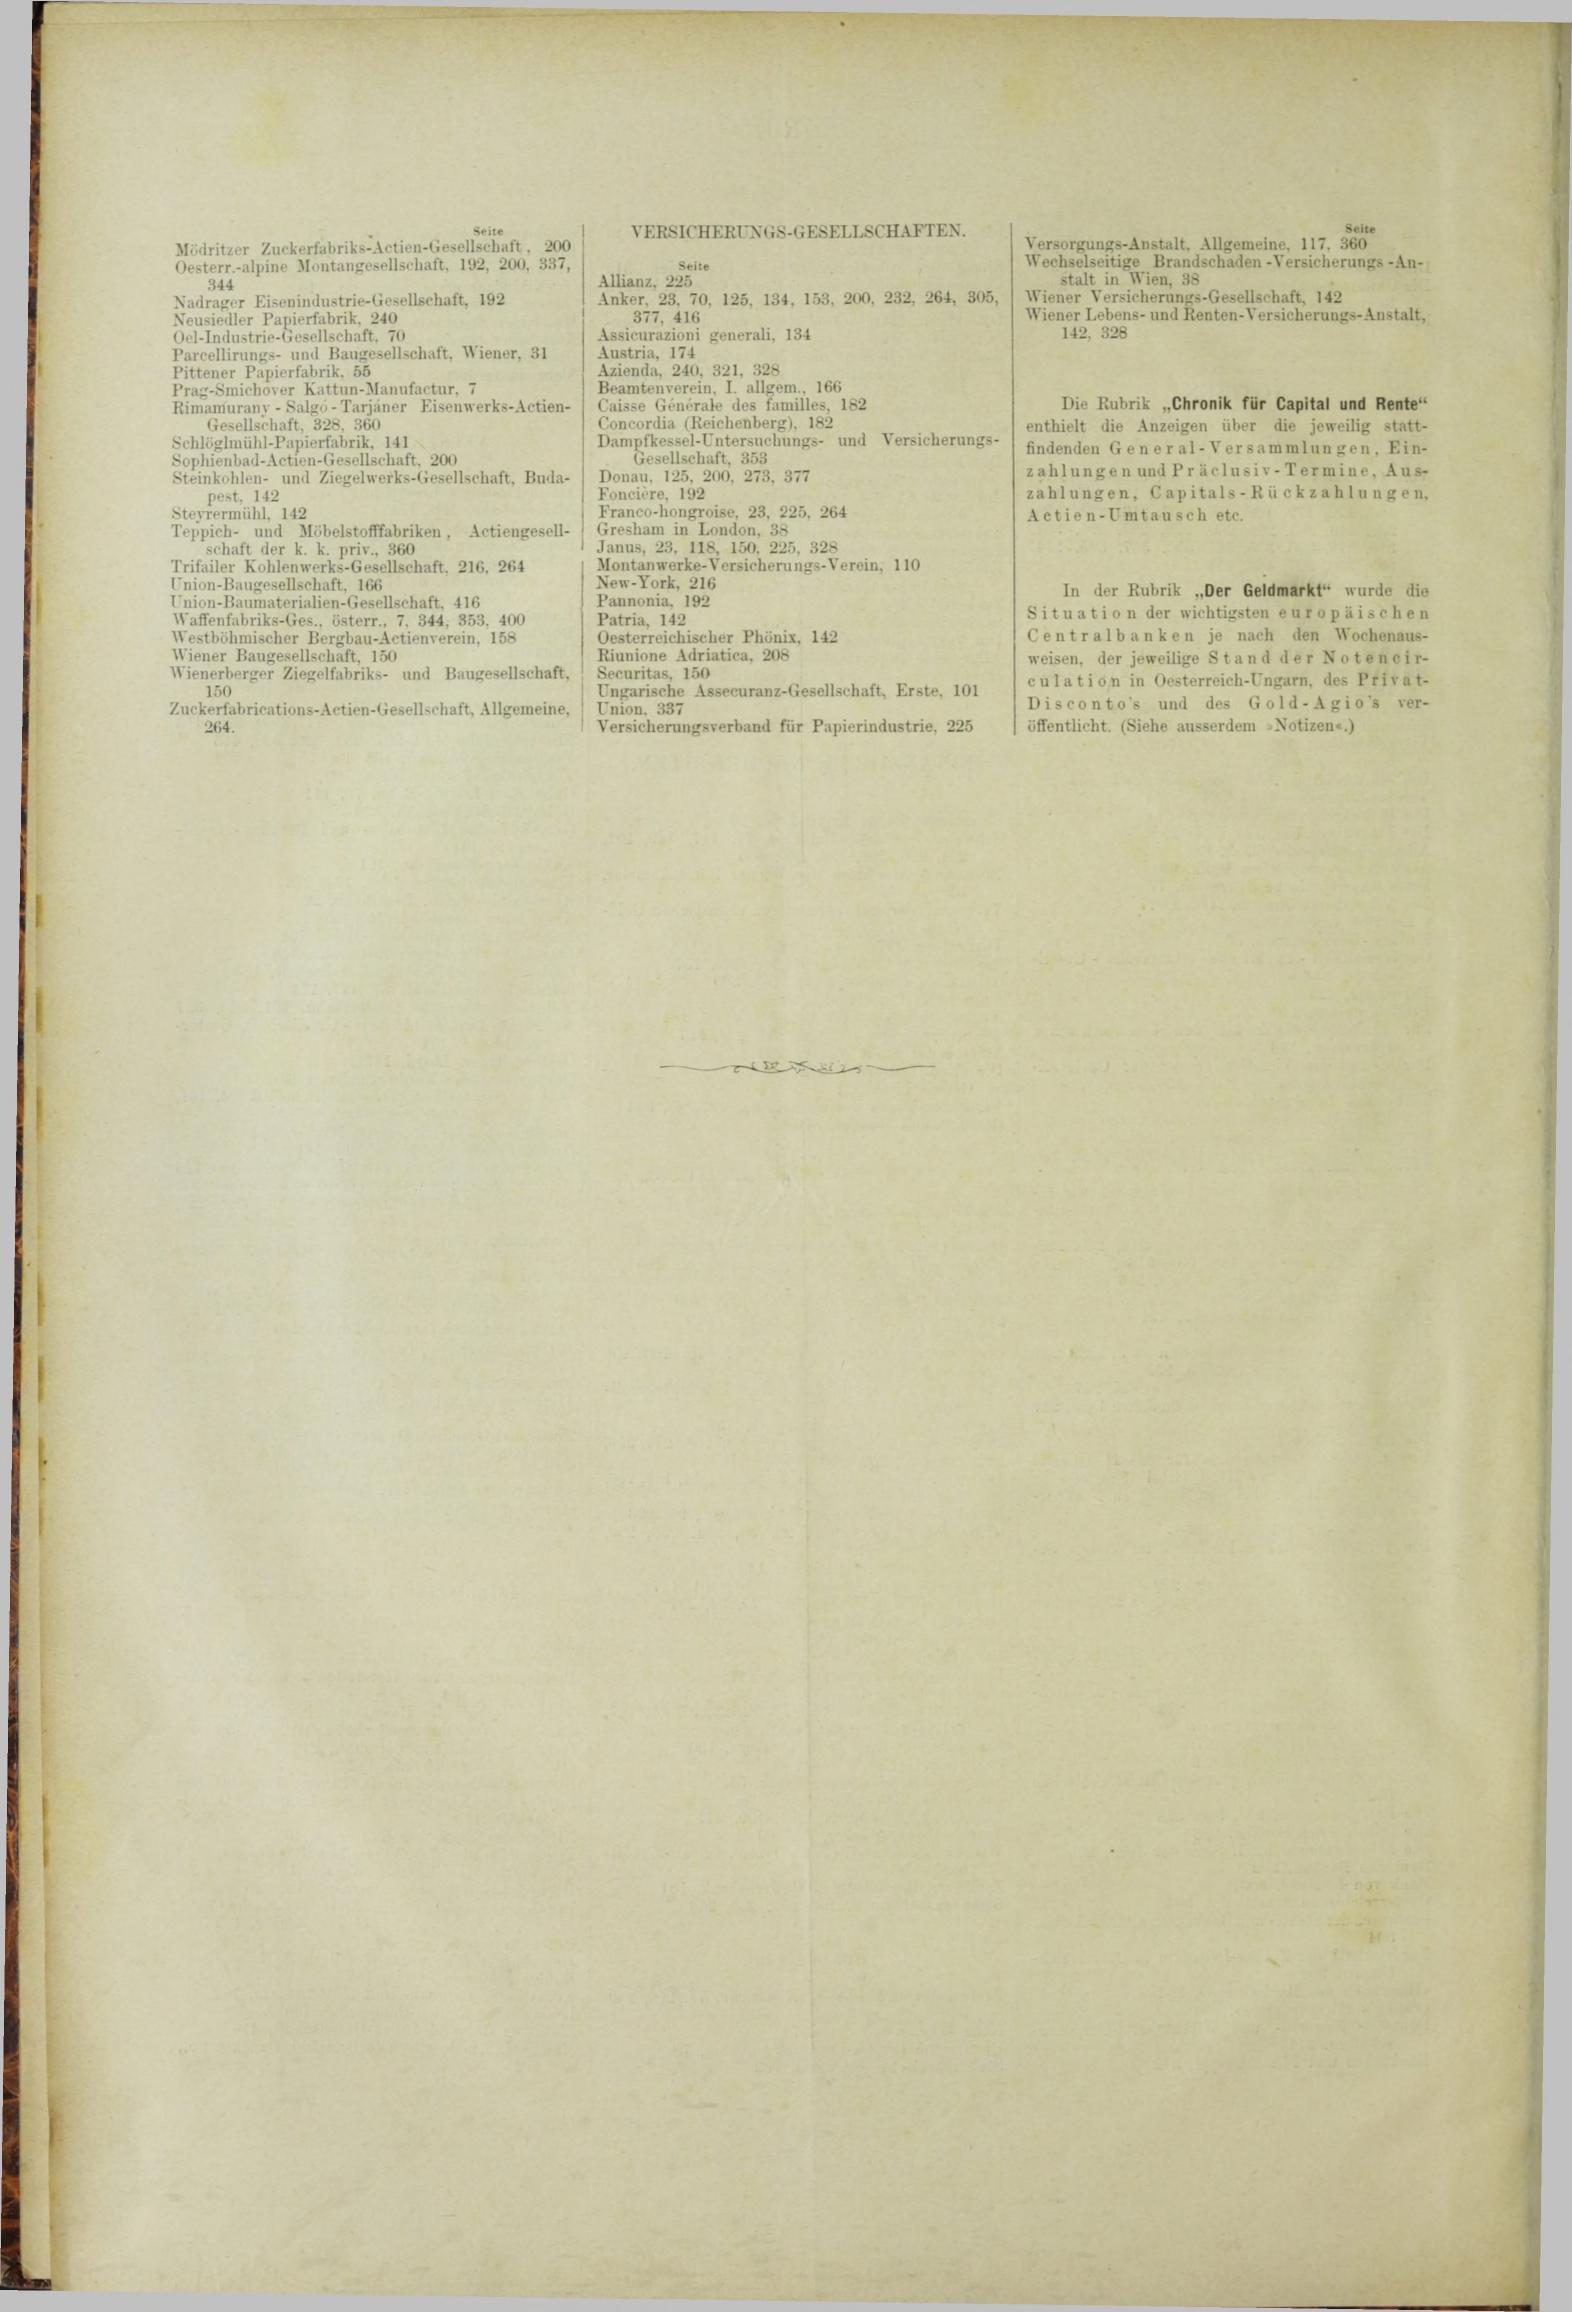 Der Tresor 15.11.1883 - Seite 12